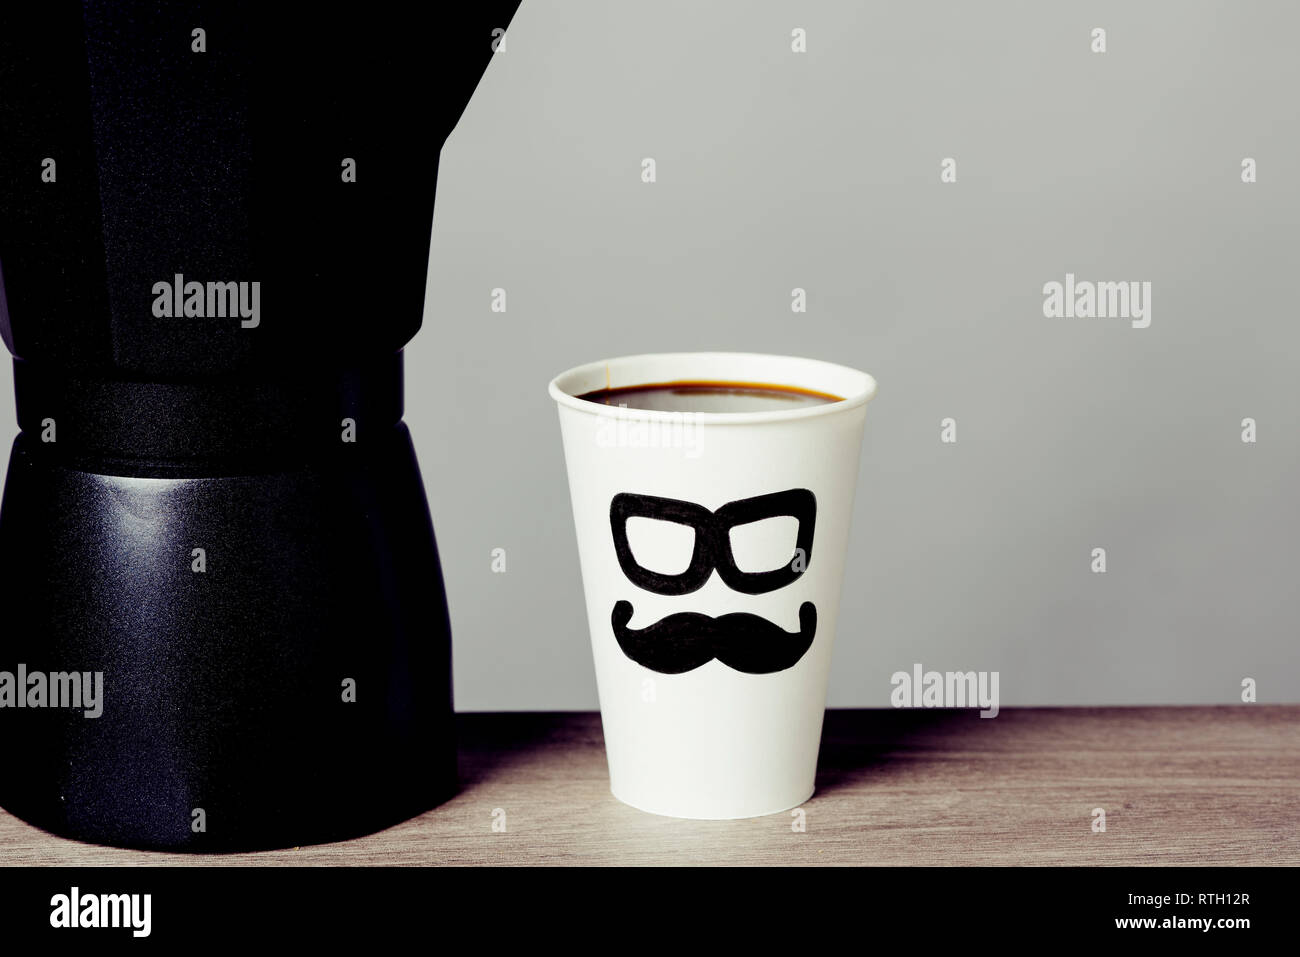 Nahaufnahme der Kaffeemaschine und eine Tasse mit Kaffee, mit ein paar Gläser und einen Schnurrbart in es gezeichnet, mit der Darstellung eines Menschen Gesicht, auf einem Holztisch Stockfoto